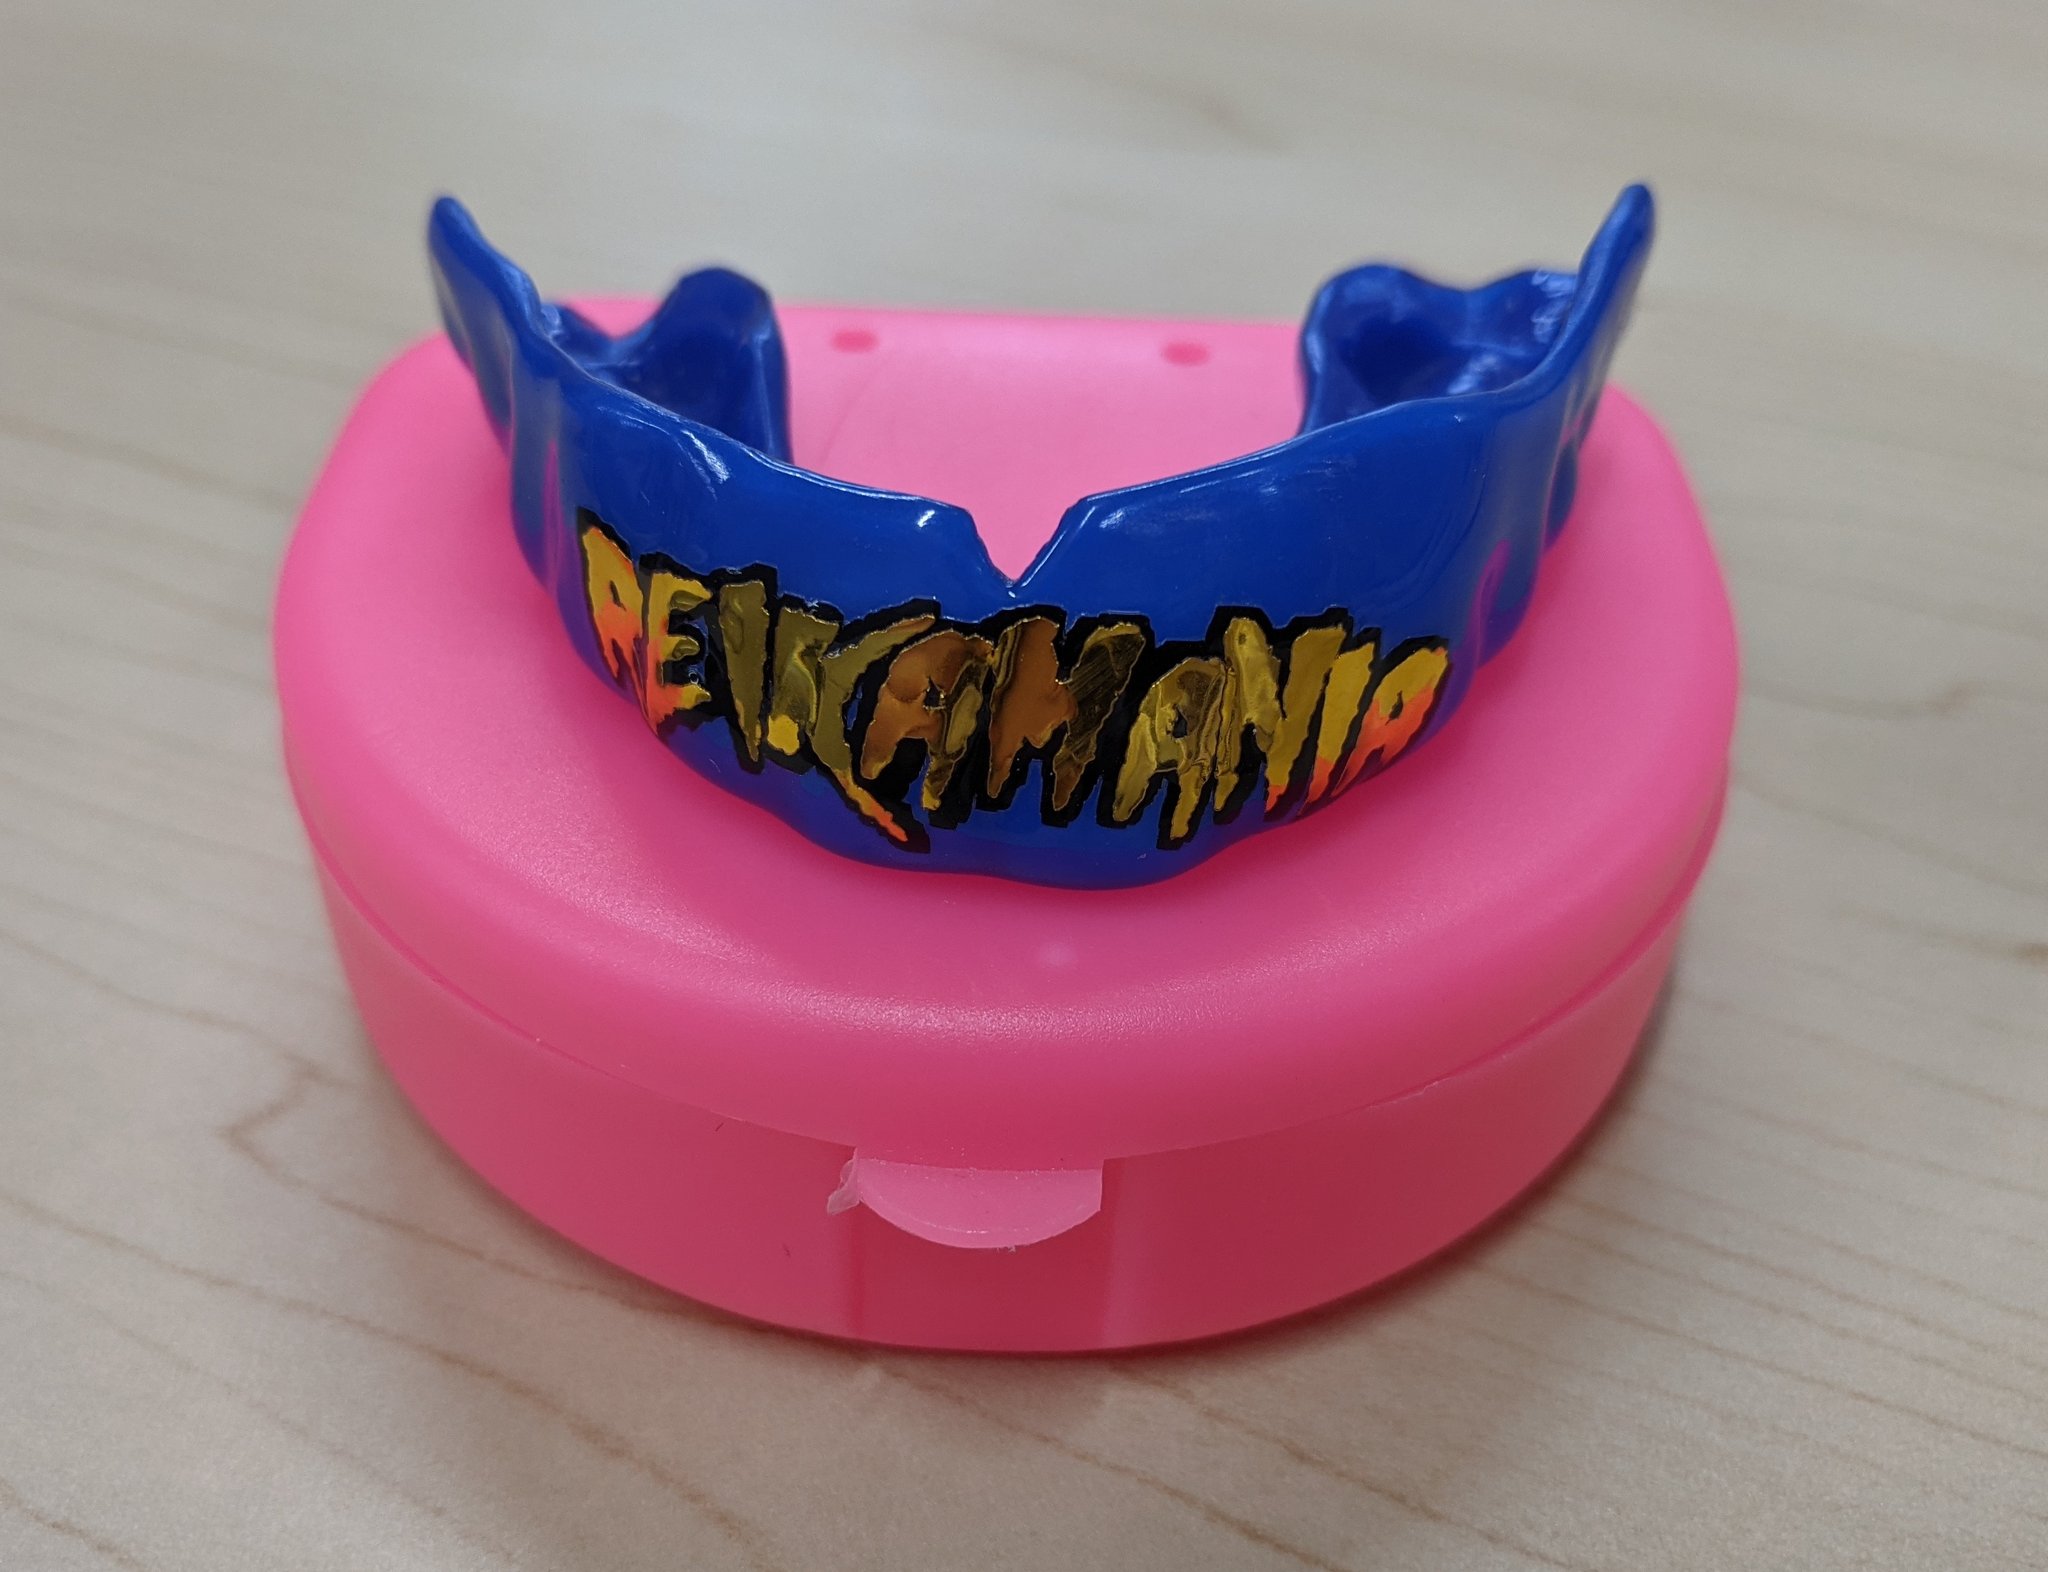 才木 玲佳 Reika Saiki お世話になってる歯医者の先生が新しいマウスピースを作ってくれたーーーっ 前に作ってくれたreikamaniaの色違い かっこいいーーーー T Co W8qst1zjgf Twitter